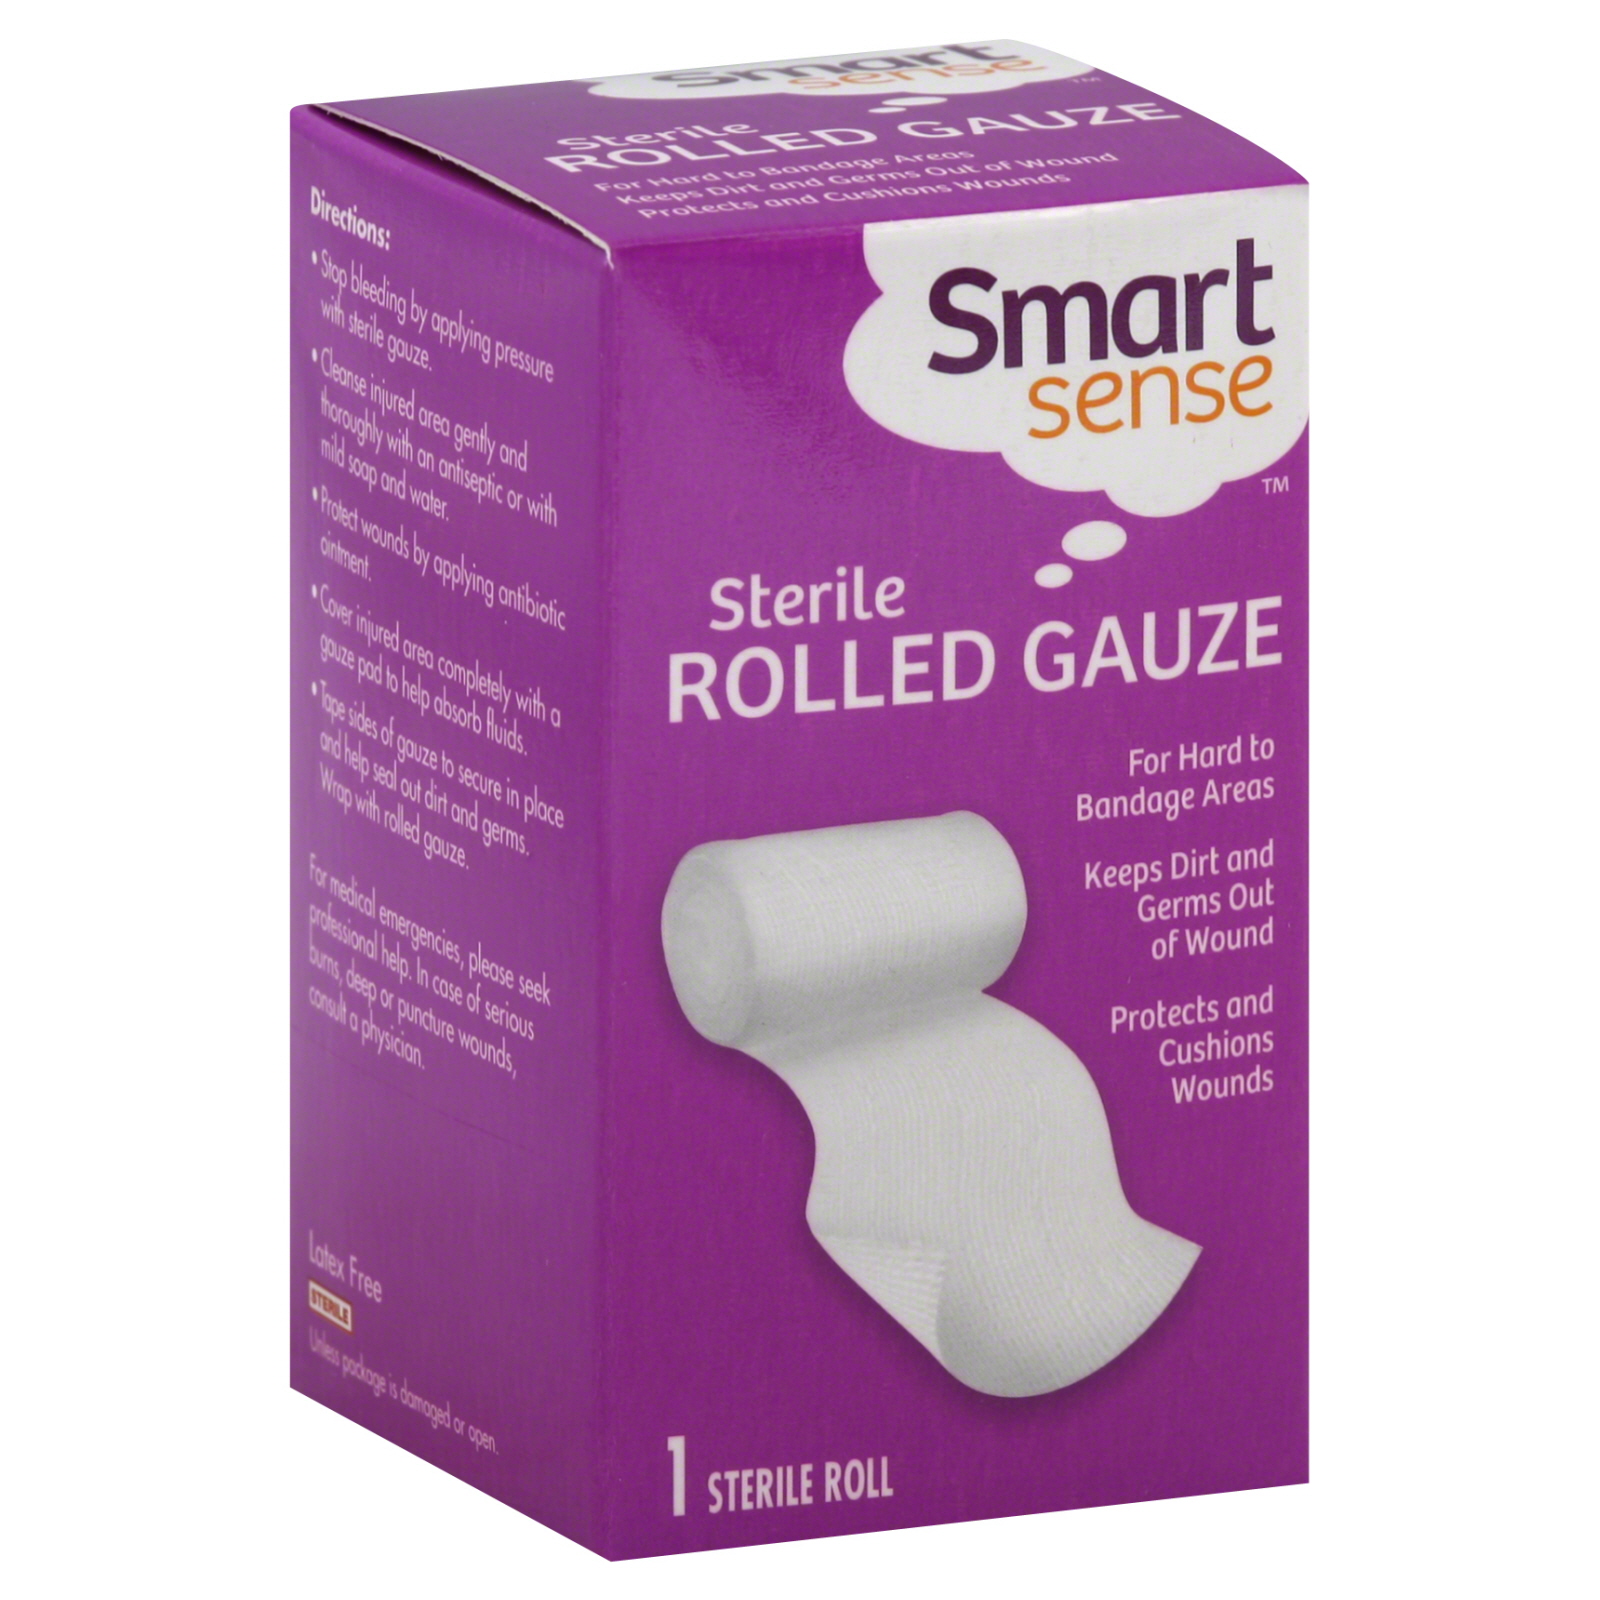 Smart Sense Sterile Rolled Gauze 4.1YD 3 INCH - 1 Roll